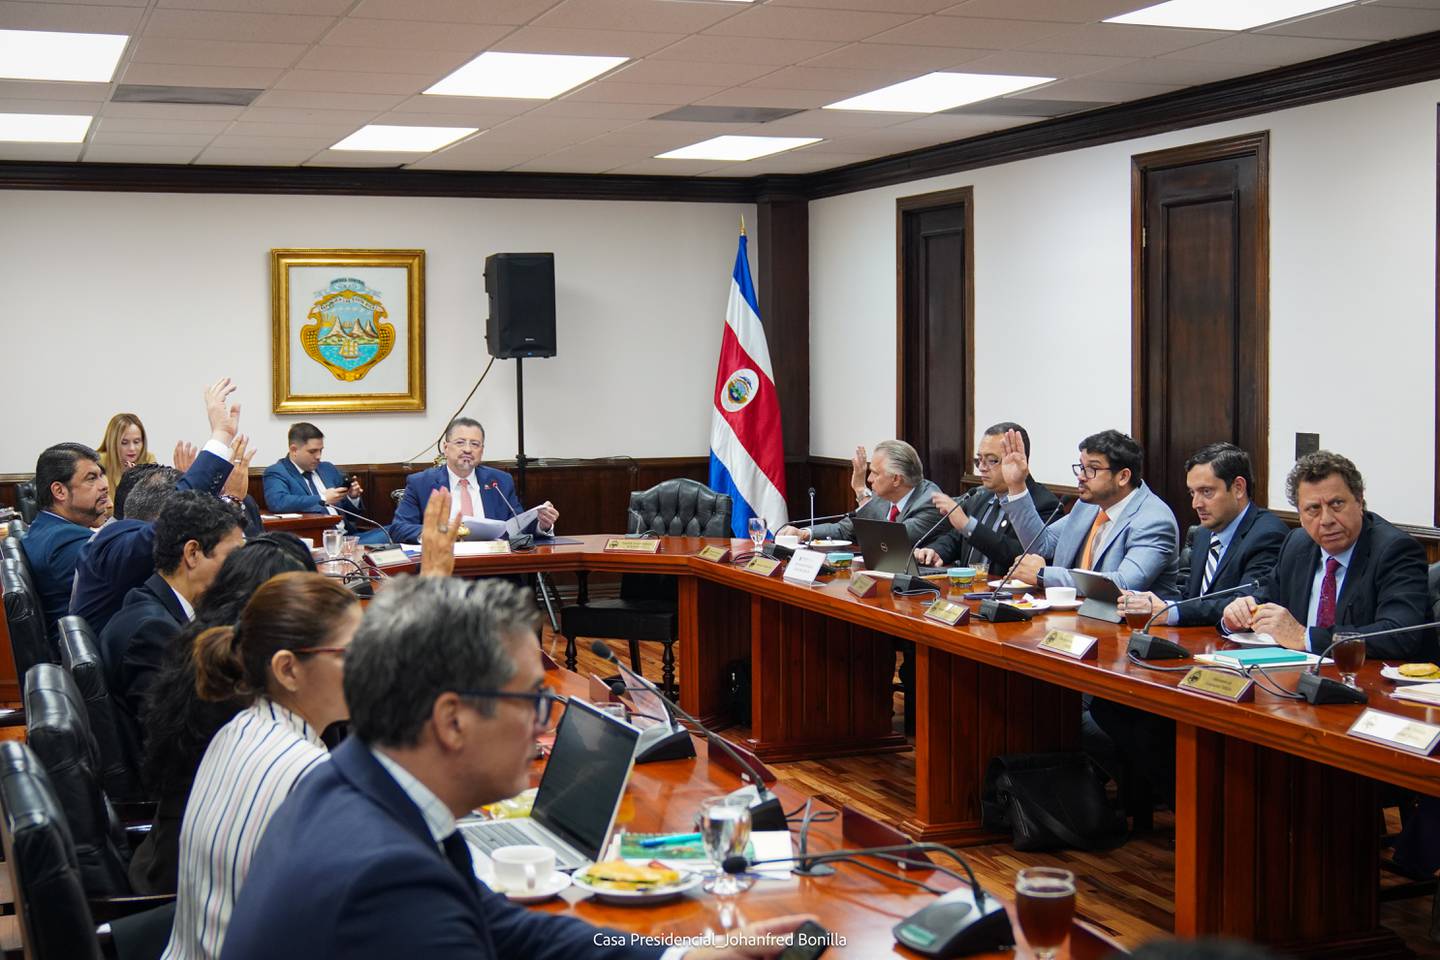 La OCDE cuestionó a Costa Rica por no publicar información de carácter pública, como las agendas de las reuniones del Gobierno. Foto: Casa Presidencial